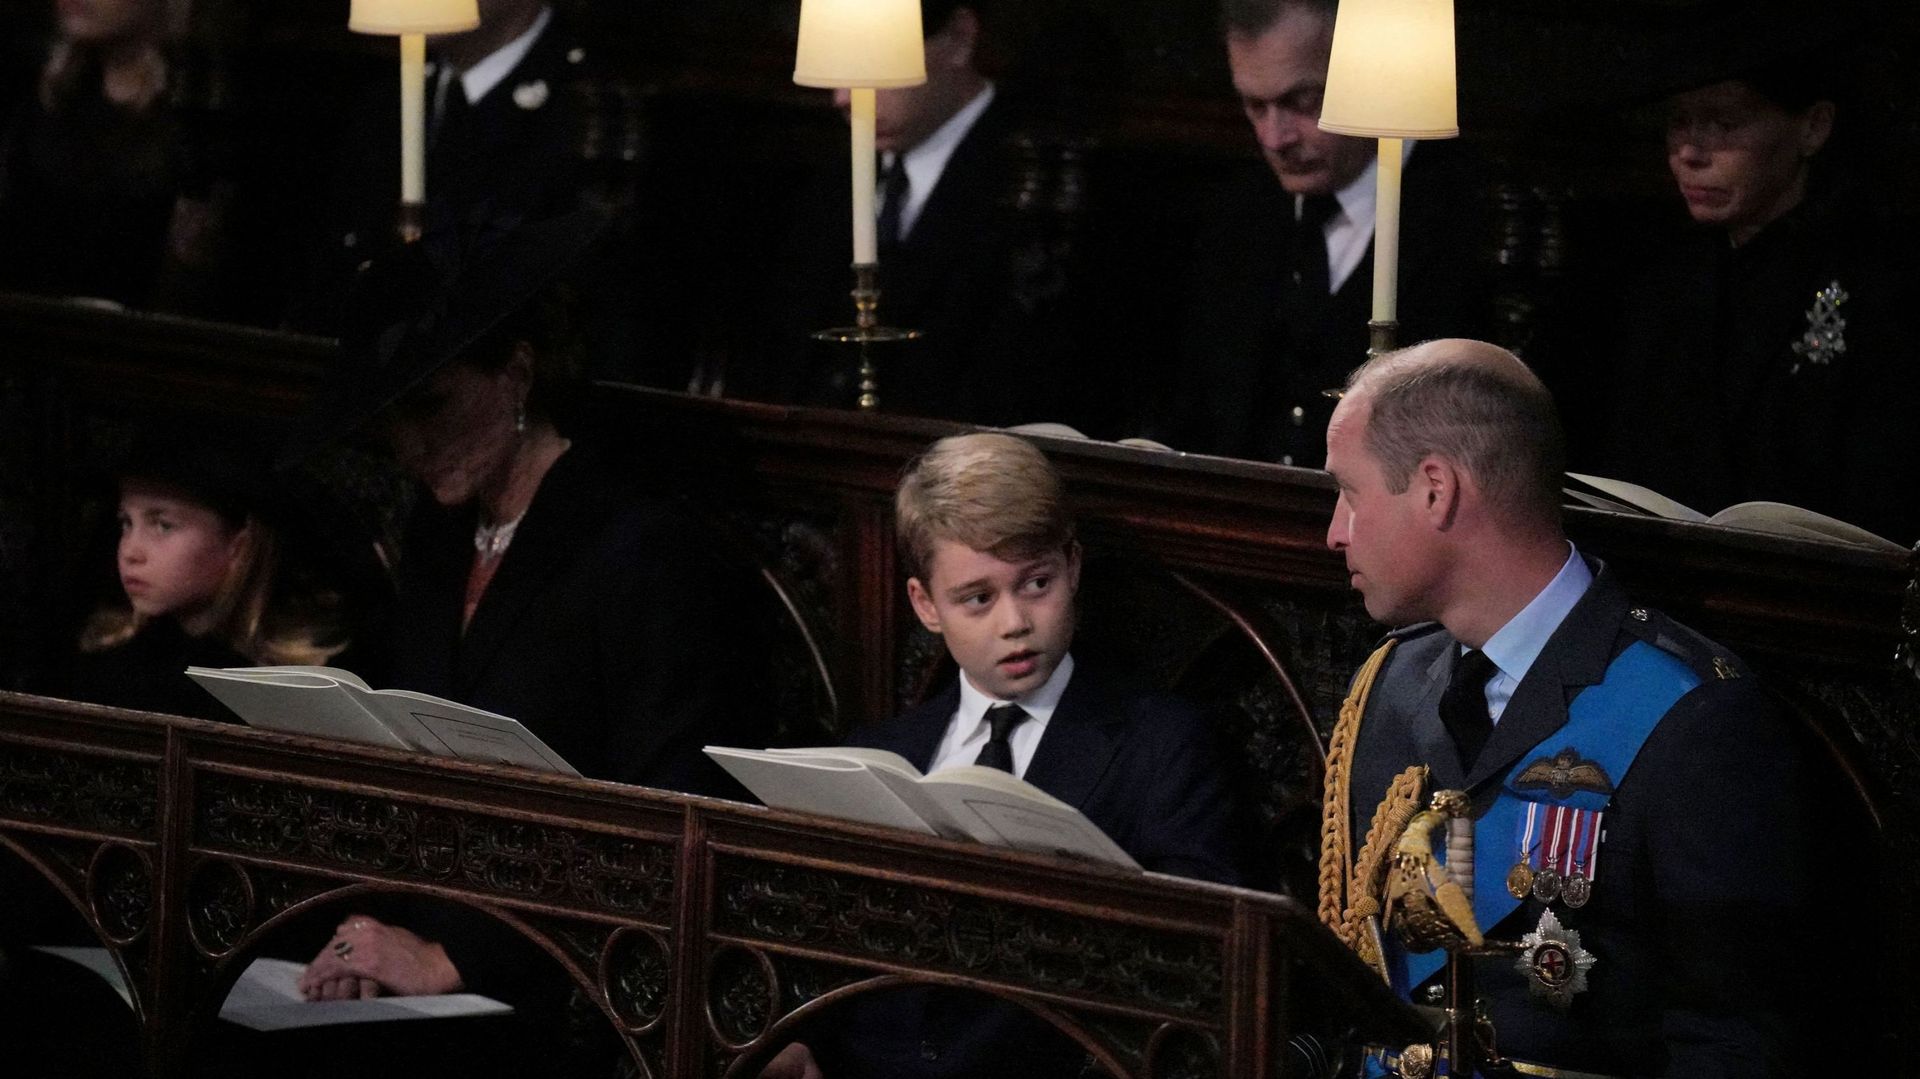 Le prince William et la princesse Kate accompagnés de leurs deux enfants aînés dans l’abbaye de Westminster.
